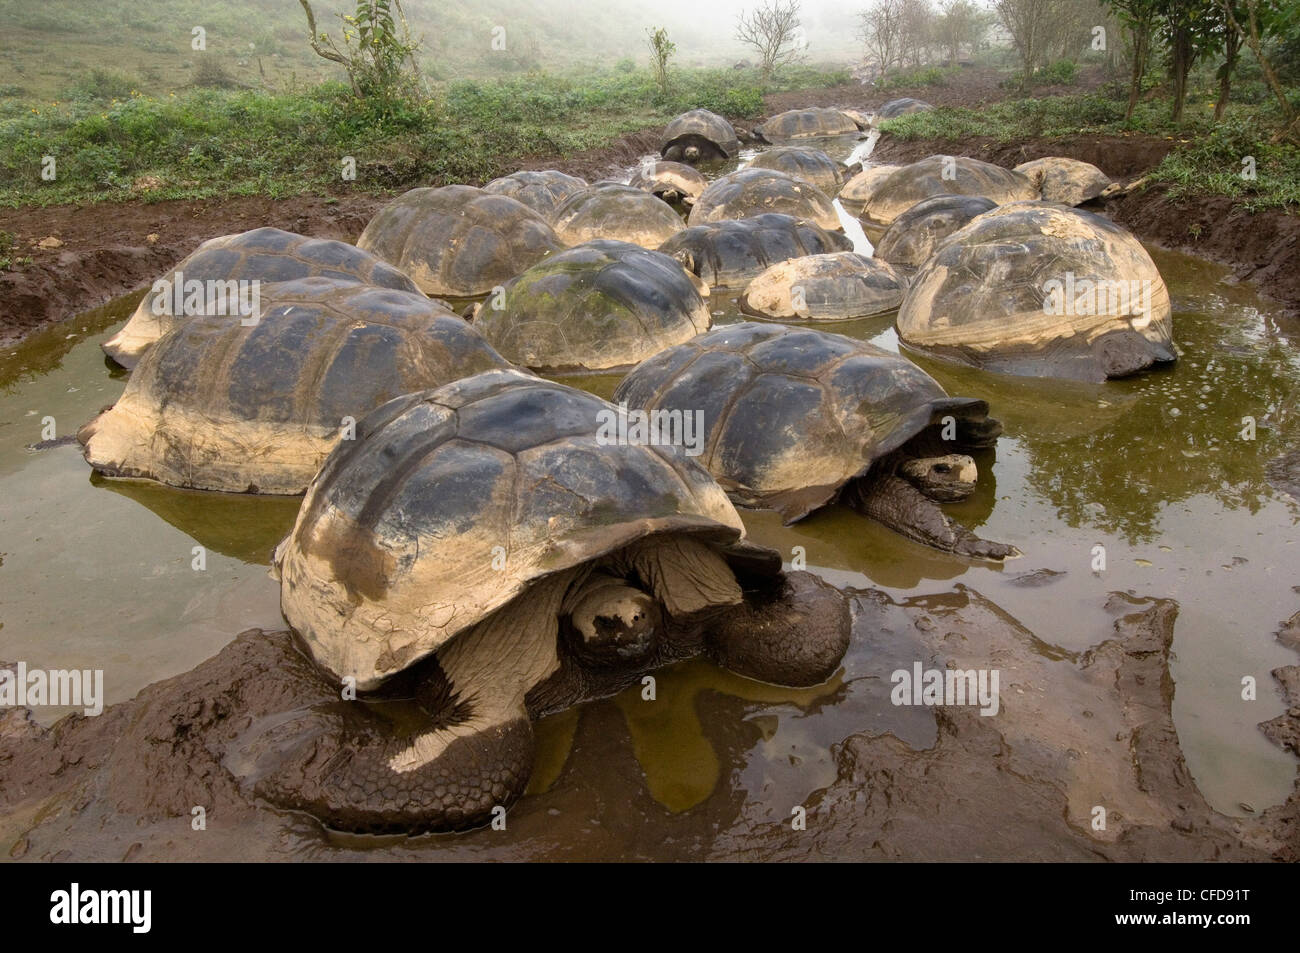 Les tortues géantes des Galapagos, cratère de volcan Alcedo, Isabela Island, îles Galapagos, Equateur, Amérique du Sud. Banque D'Images